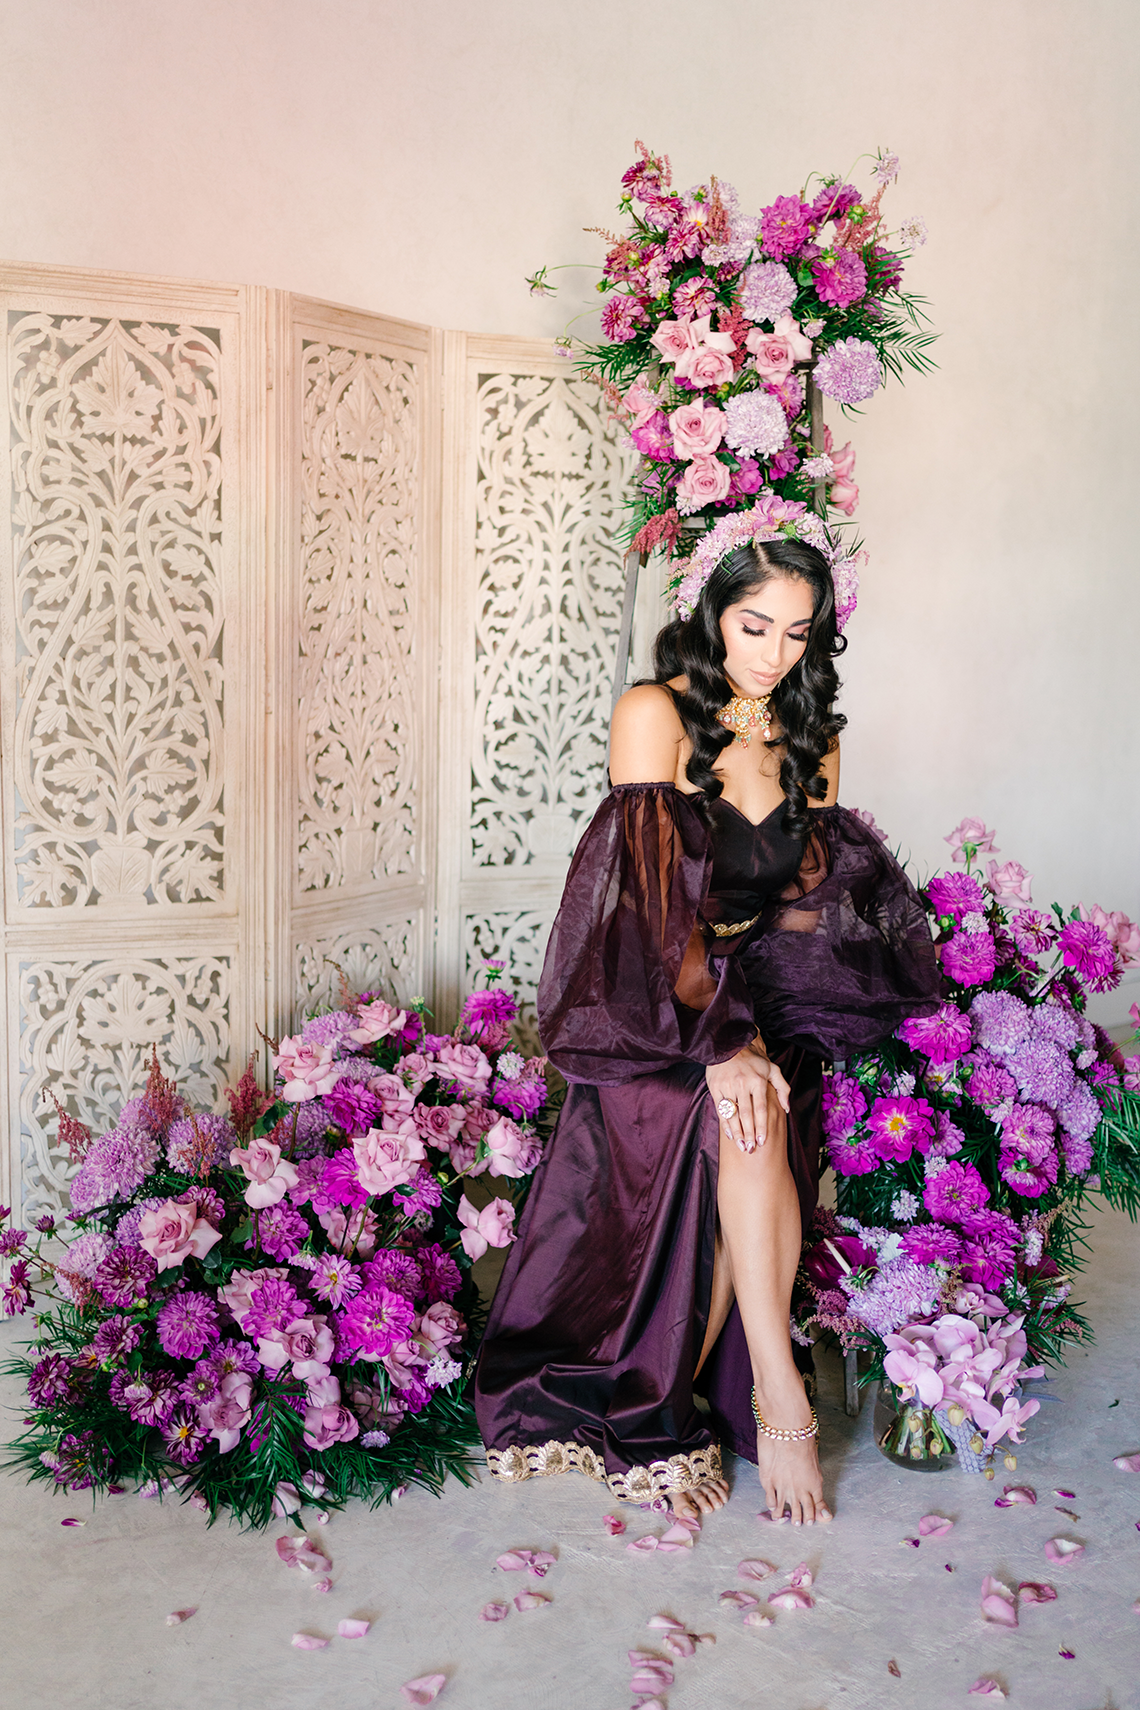 Inspiración para bodas de lujo en púrpura lavanda del sur de Asia - Eventos Inxviii - Películas y fotos de Lula King - Reflexiones de bodas 24